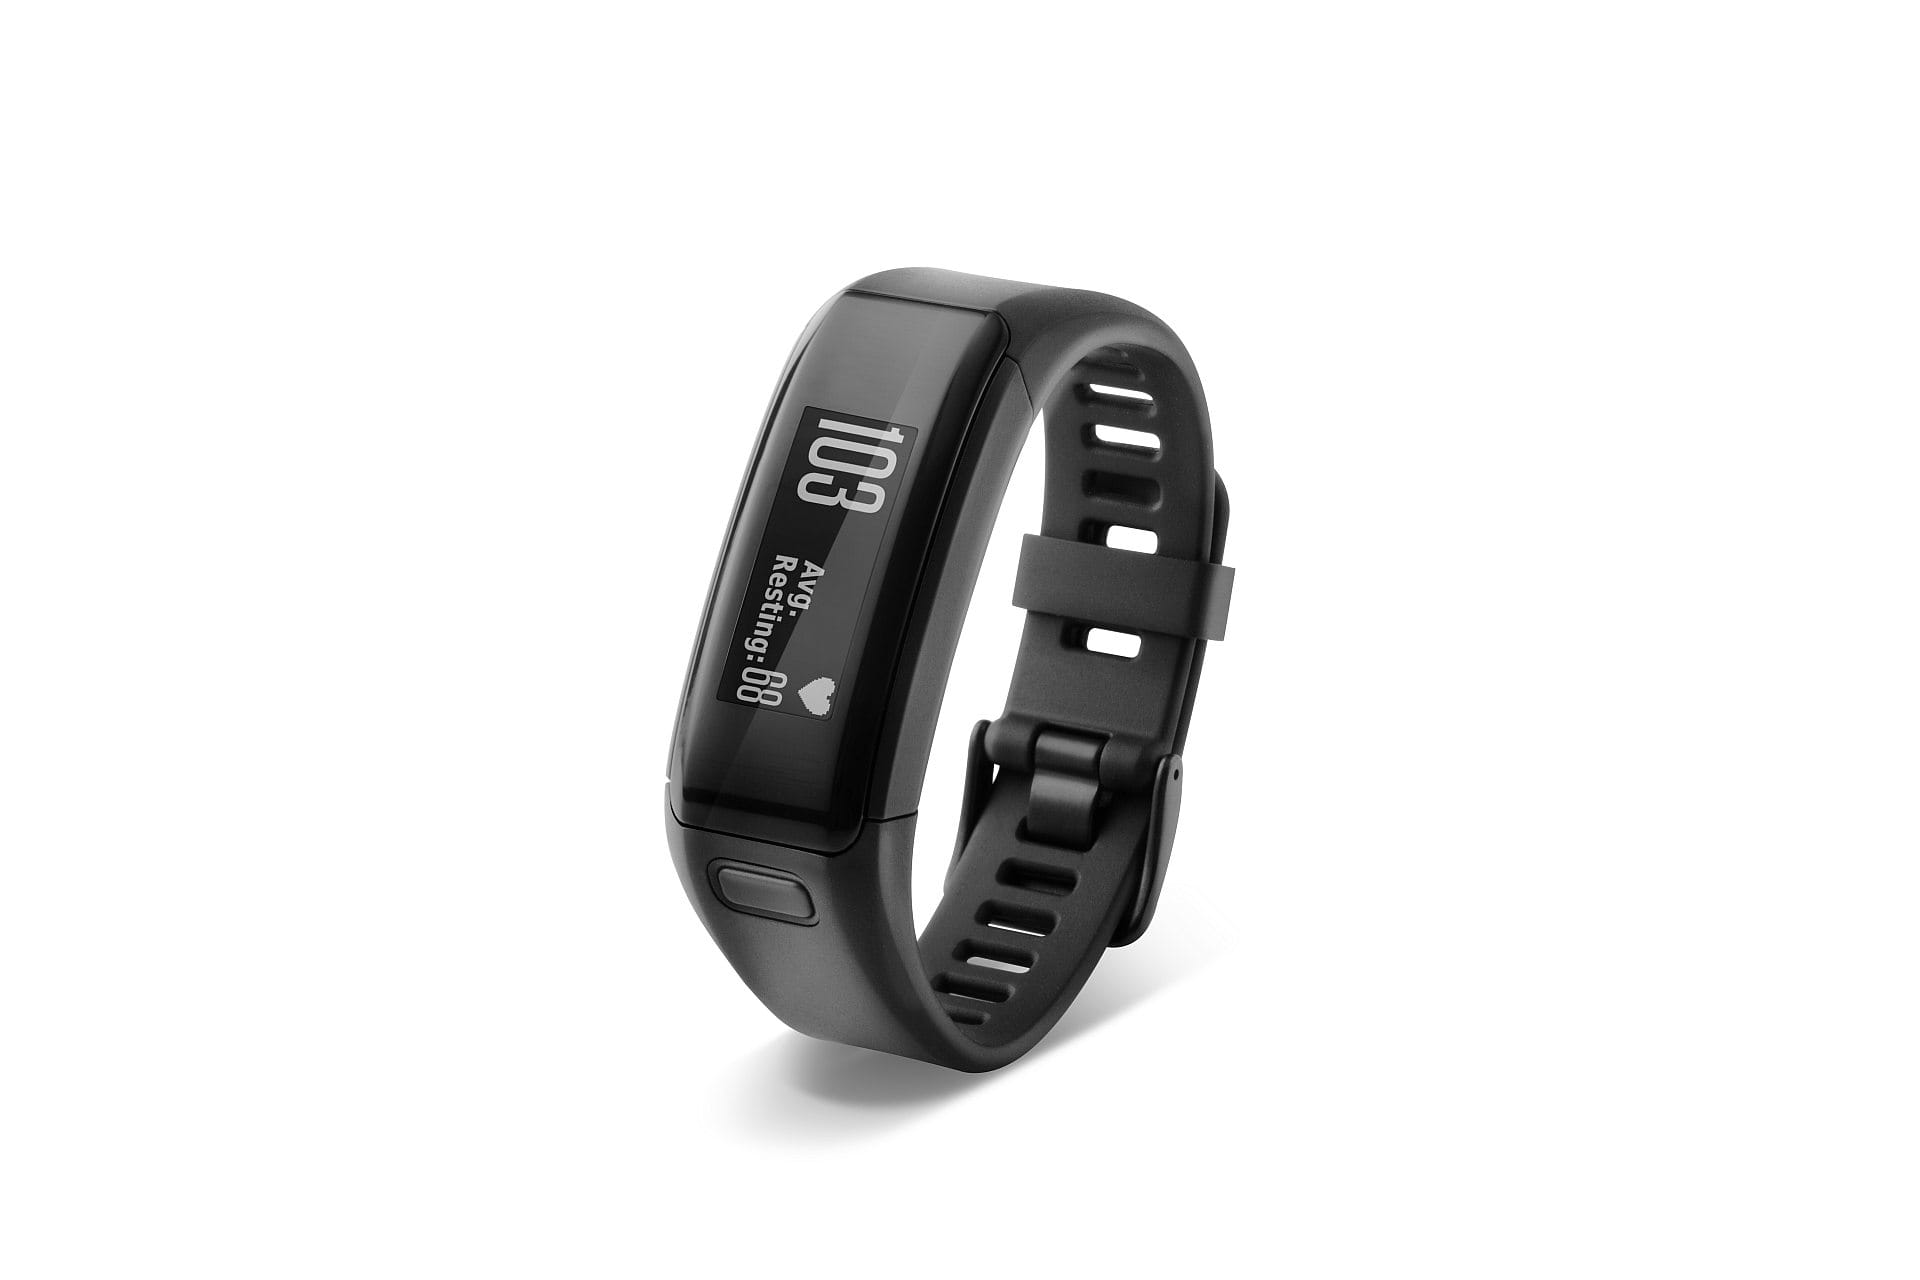 Der Garmin Vivosmart HR für rund 120 Euro gehört zu den ausgereiften Trackern mit vielen Funktionen. Er ersetzt fast eine Smartwatch und bietet dennoch eine gute Akkulaufzeit.